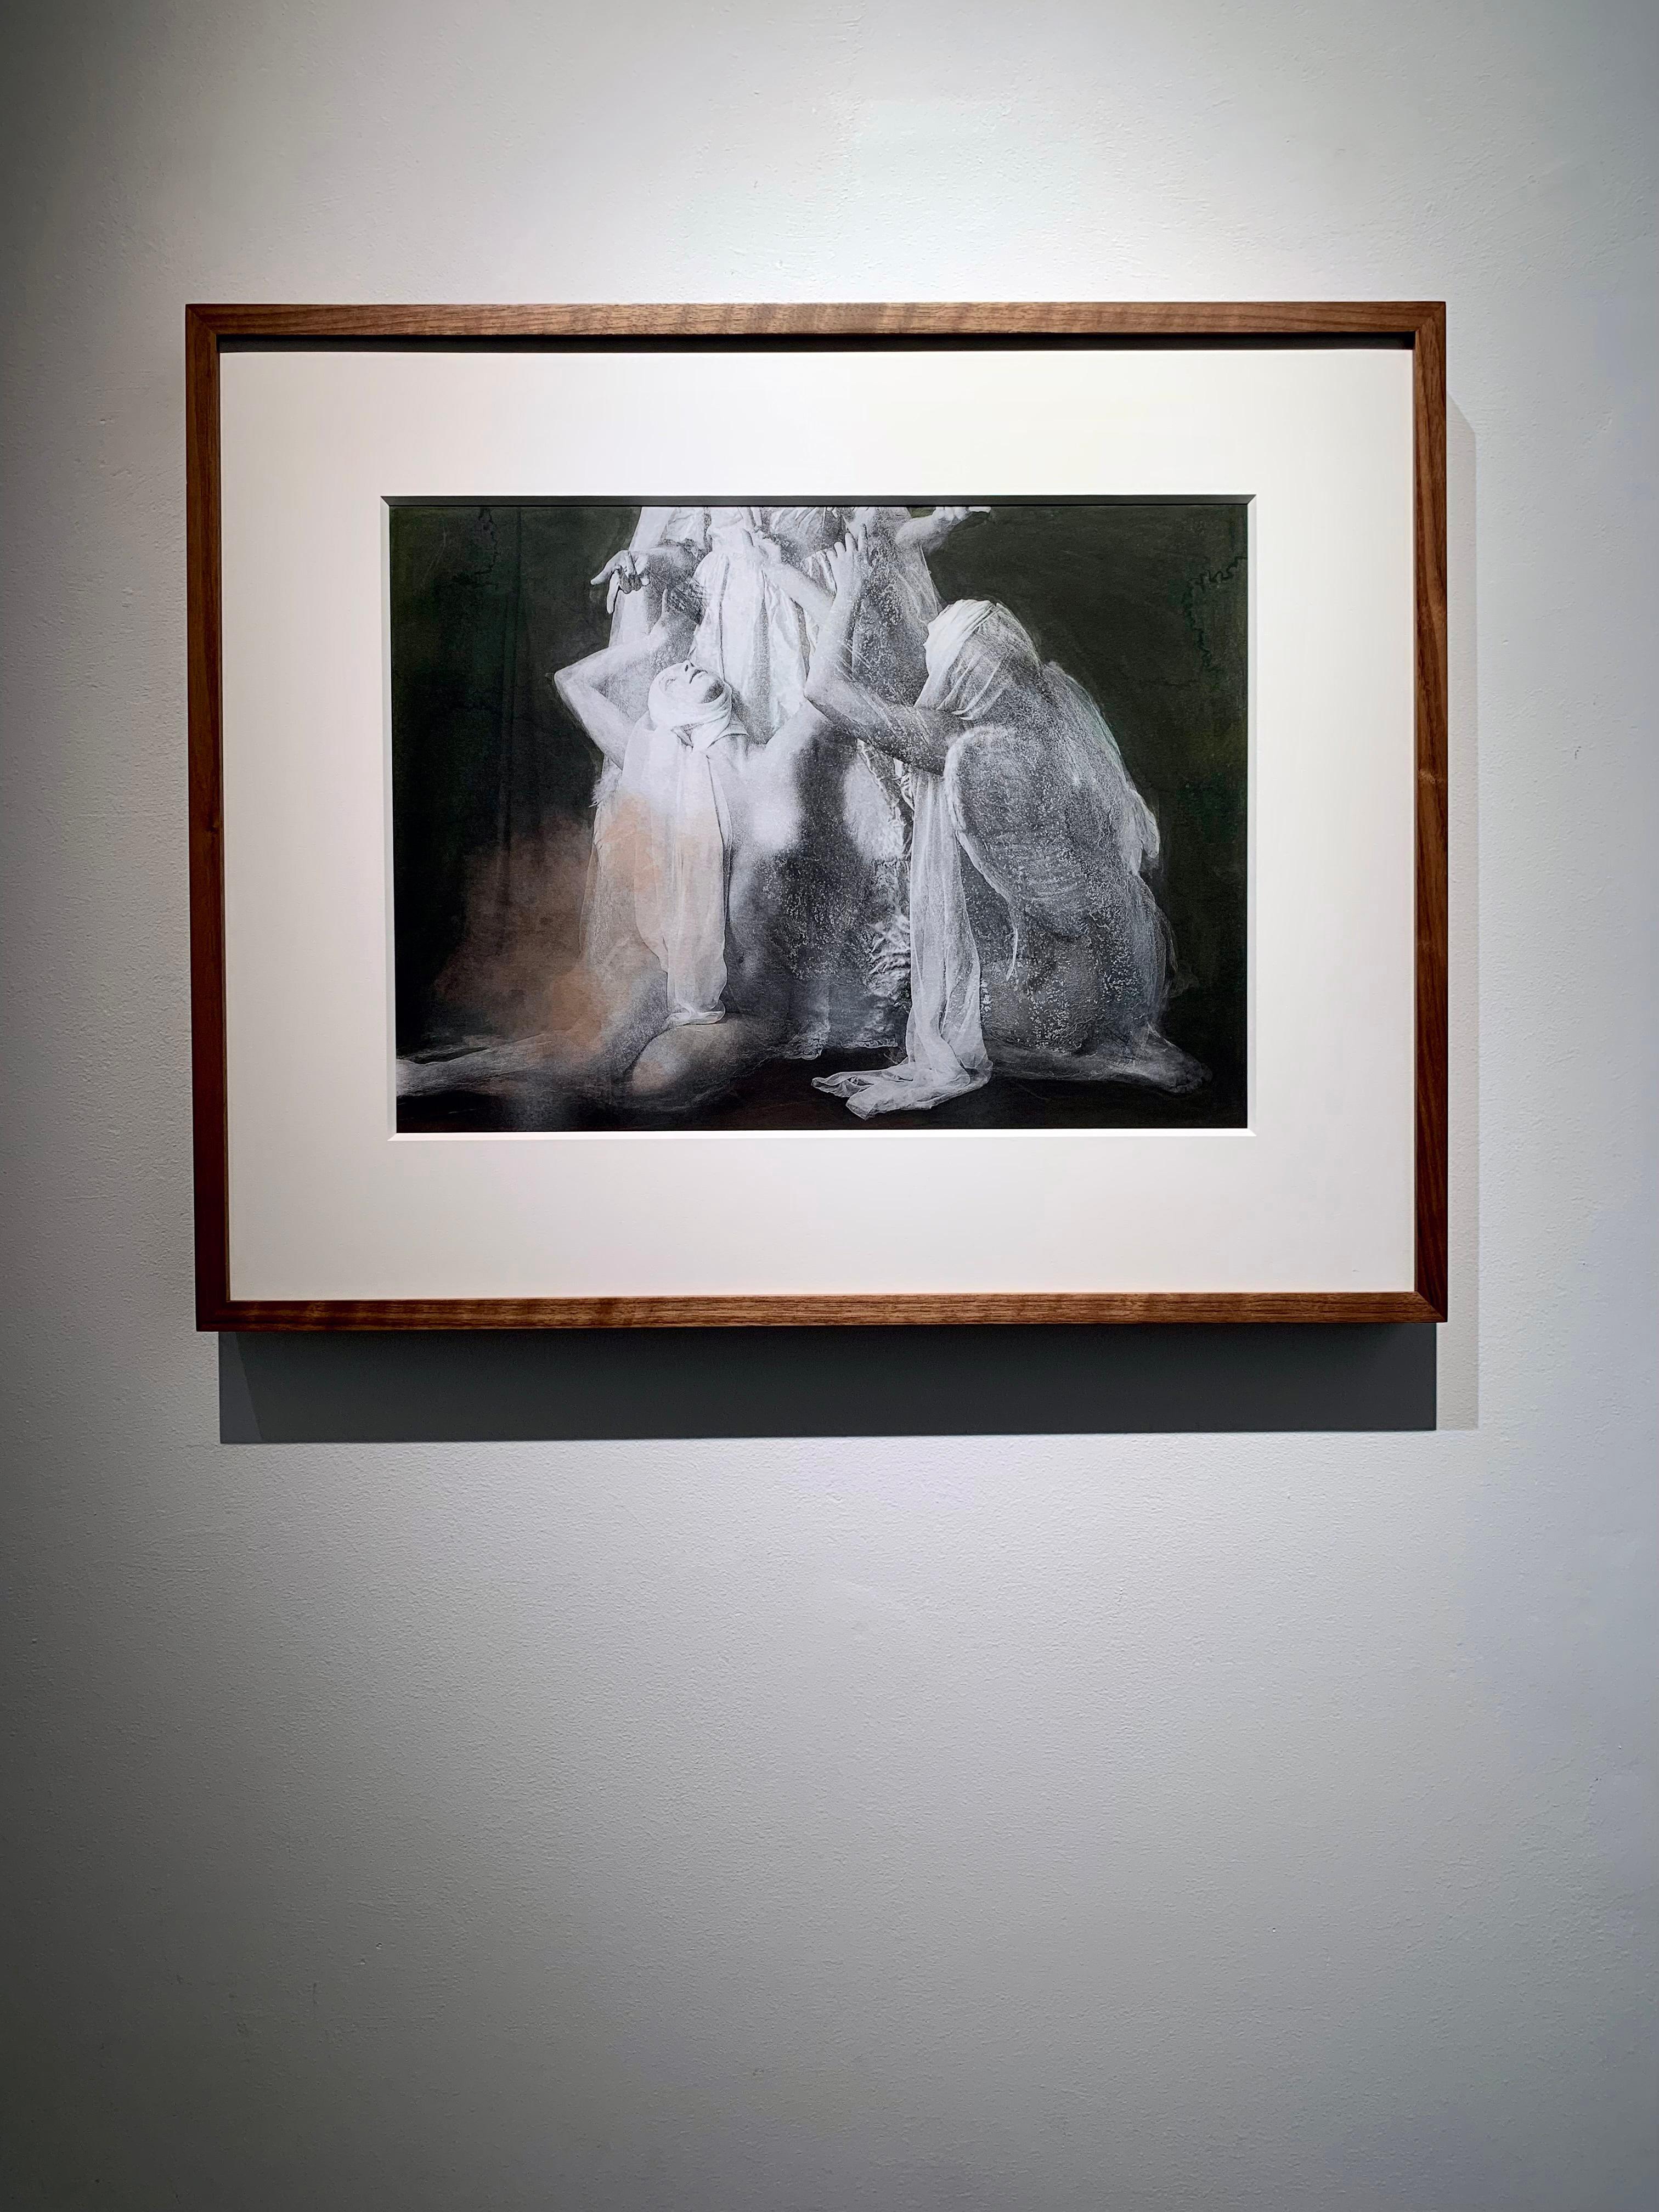 Impression colorée à la main de sculptures mythiques en forme d'anges pleureurs dans un cadre en noyer  - Marron Portrait Print par Katie Eleanor